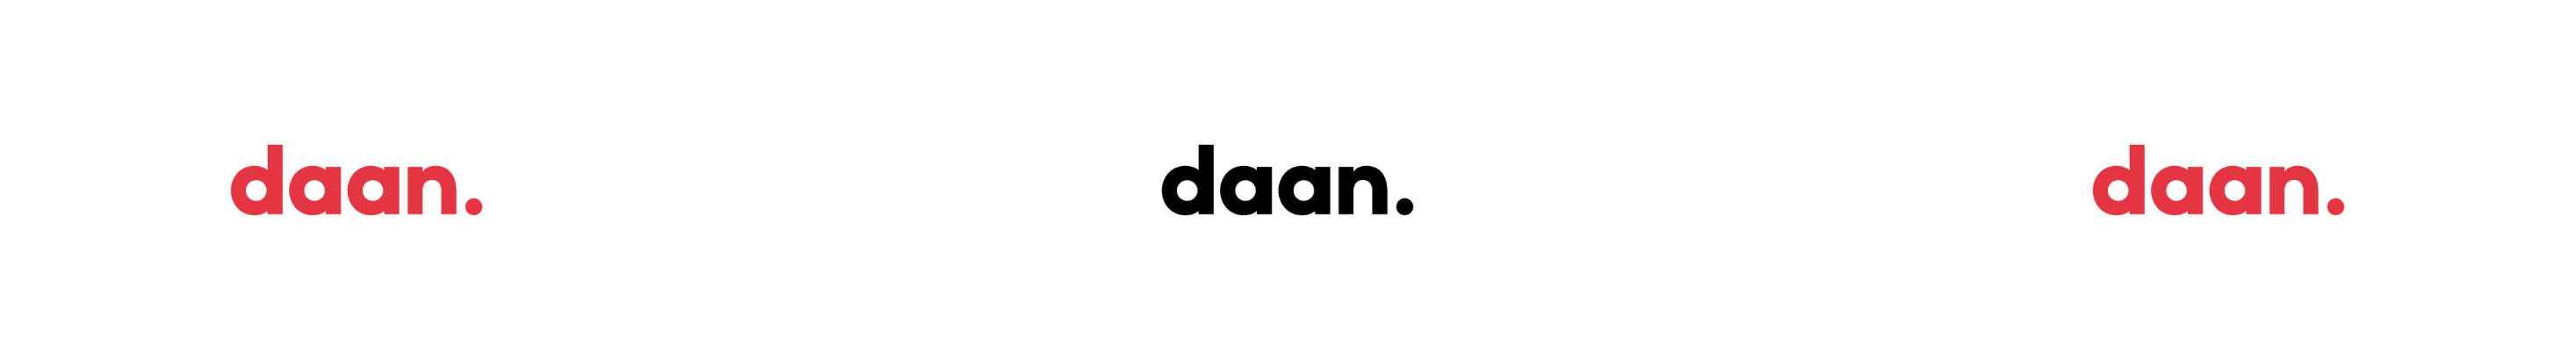 Daan van Lieshout's profile banner